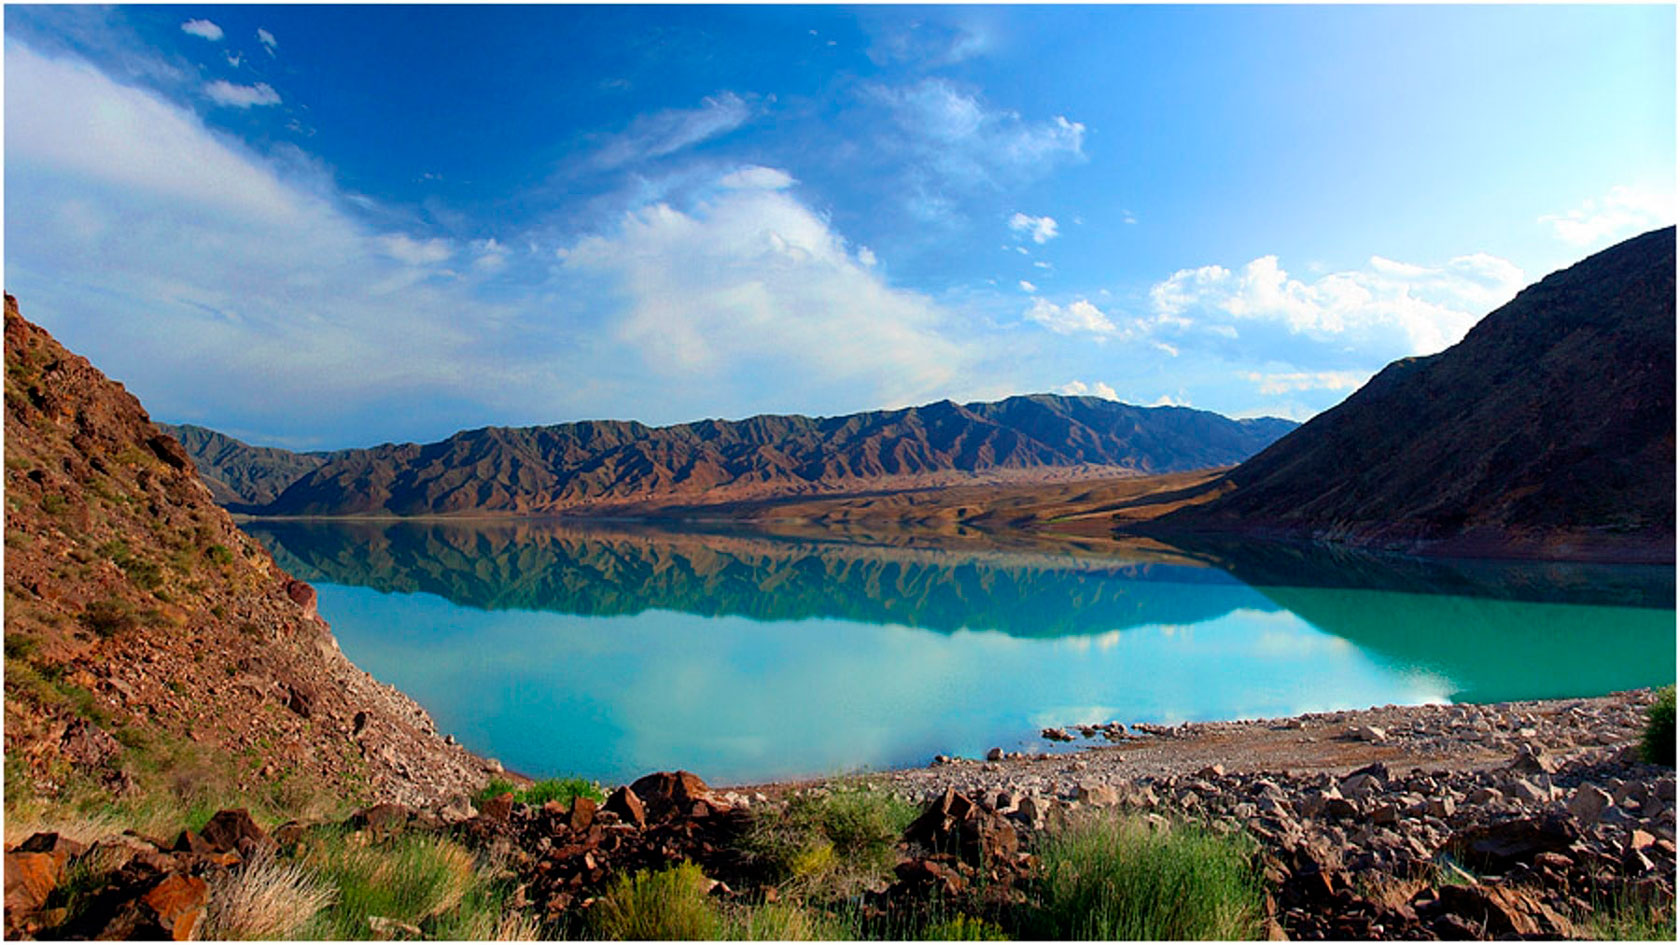 Капчагай казахстан фото озеро в казахстане